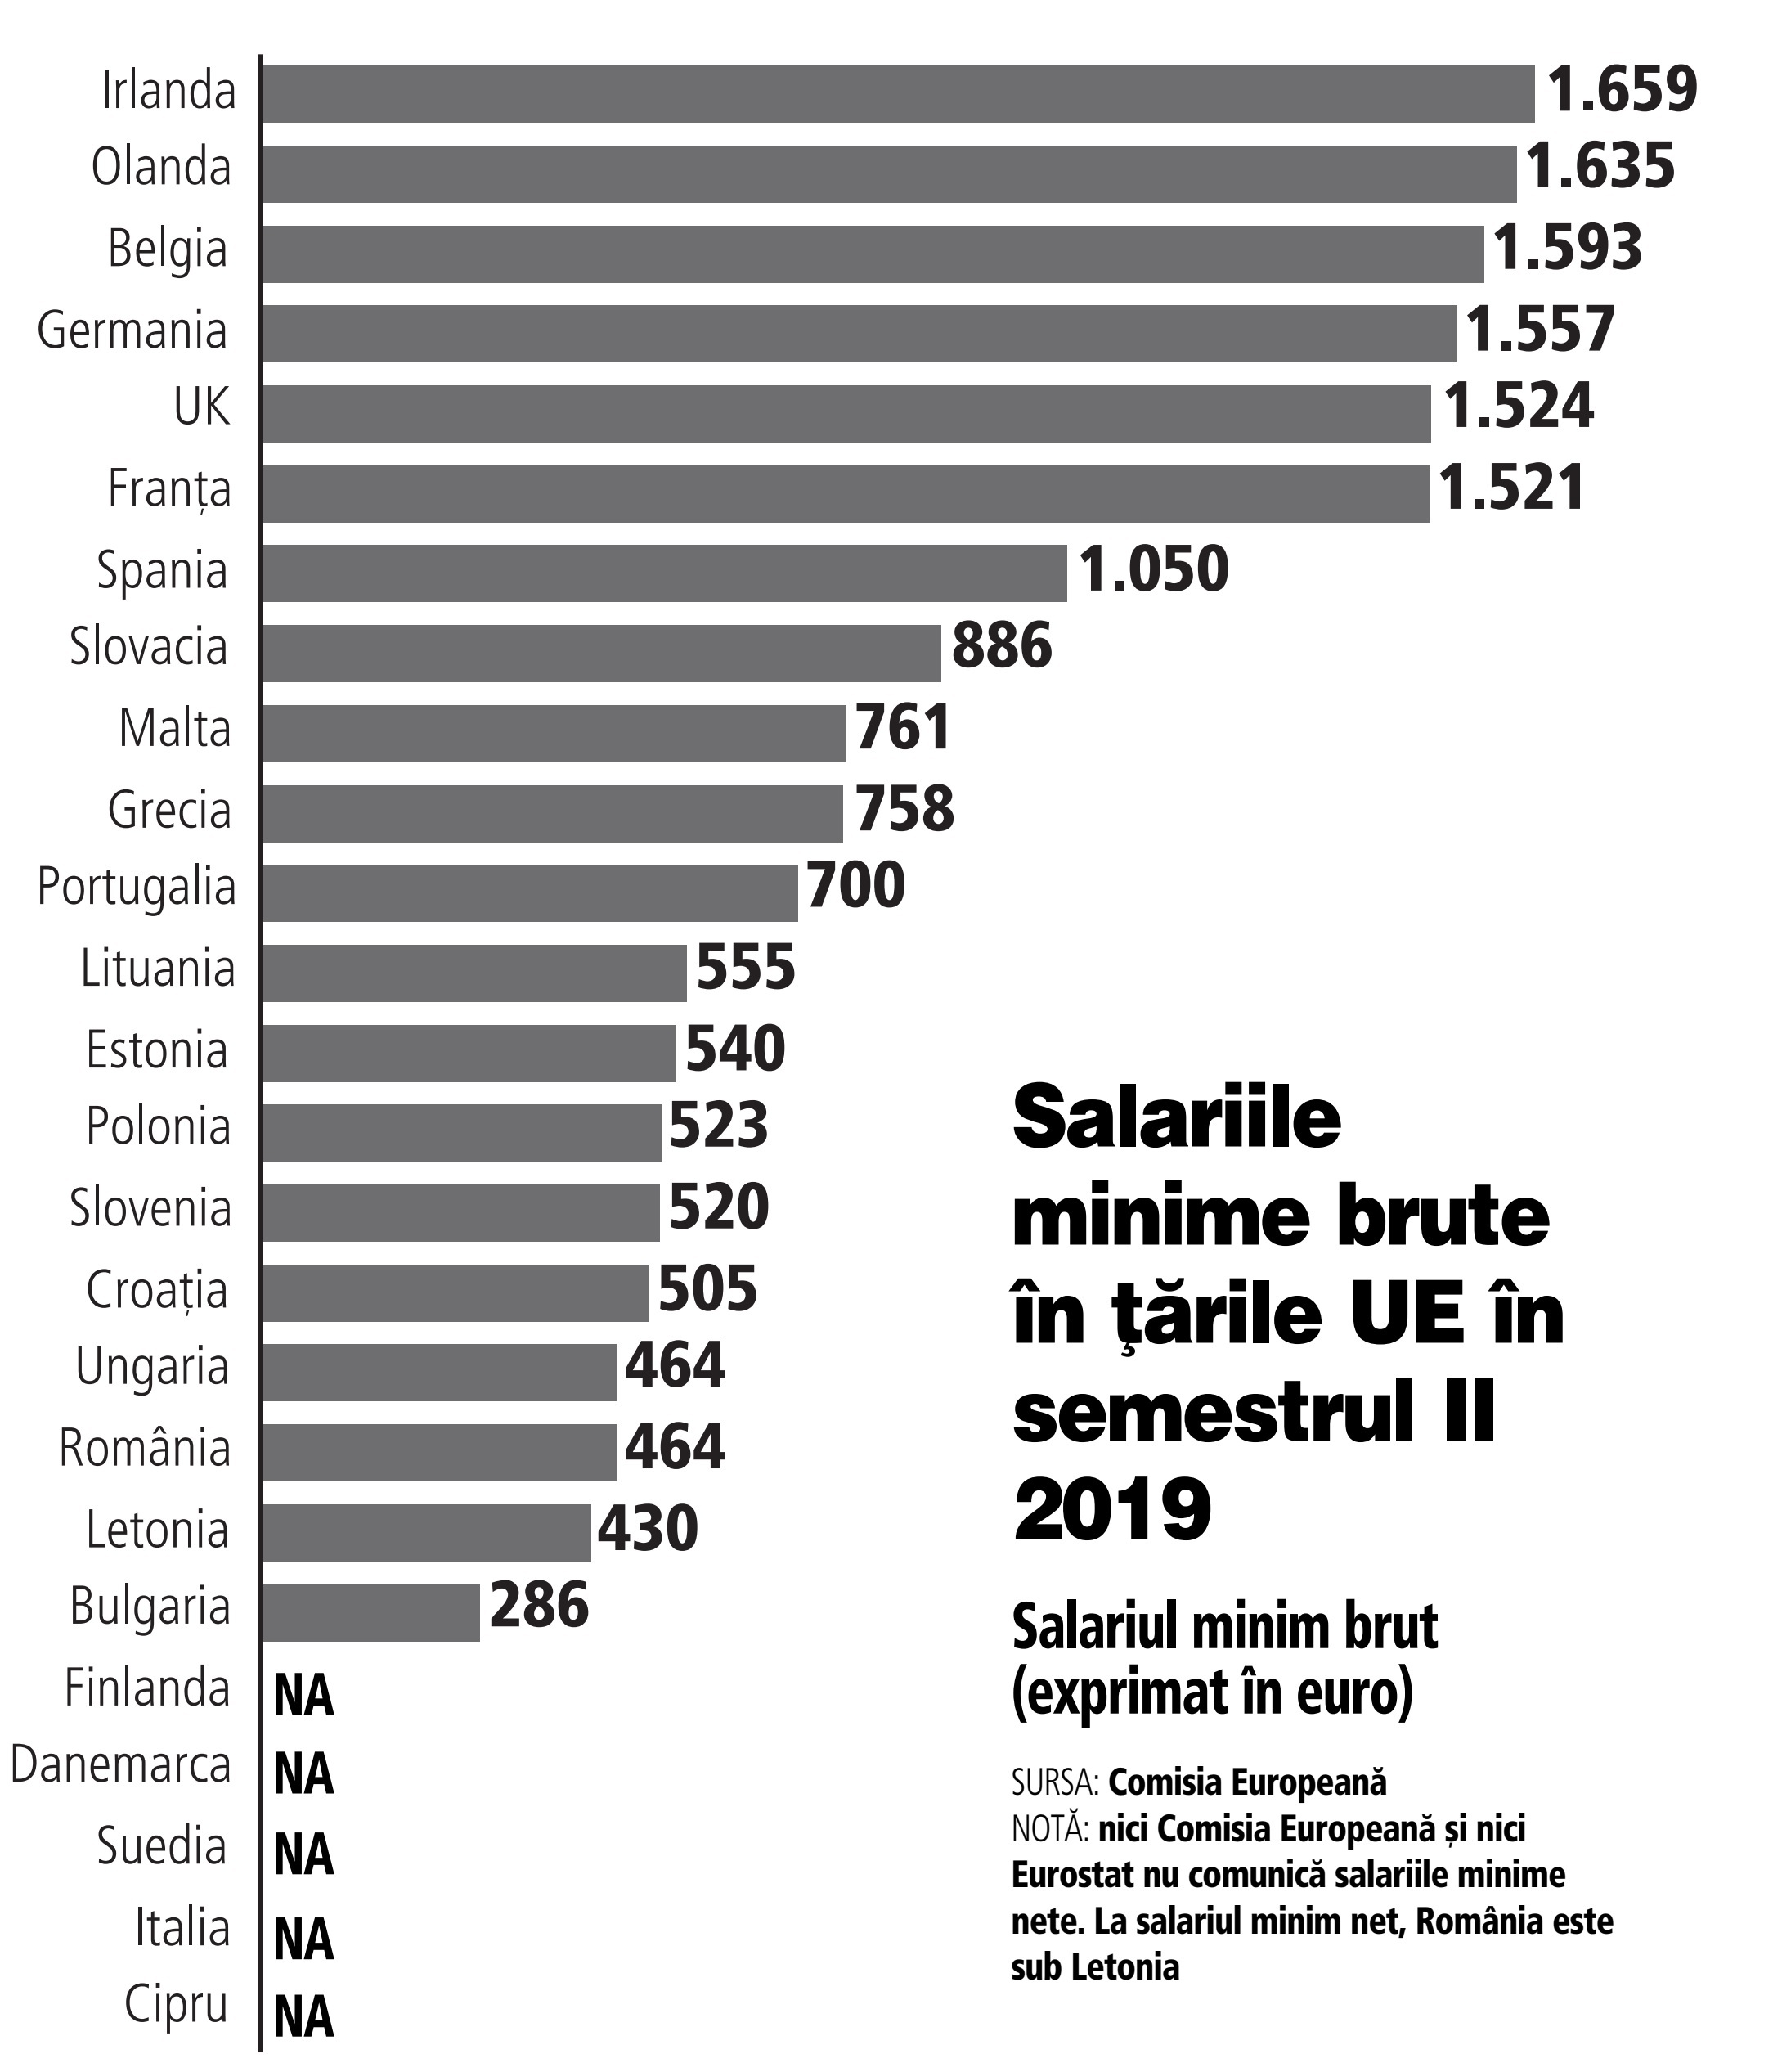 Pe Ce Loc Ar Urca Romania In Clasamentul Salariului Minim In Ue DacÄƒ Acesta Va Fi Majorat De La 1 Ianuarie Care Sunt Salariile Minime Brute In Å£Äƒrile Ue In S2 2019